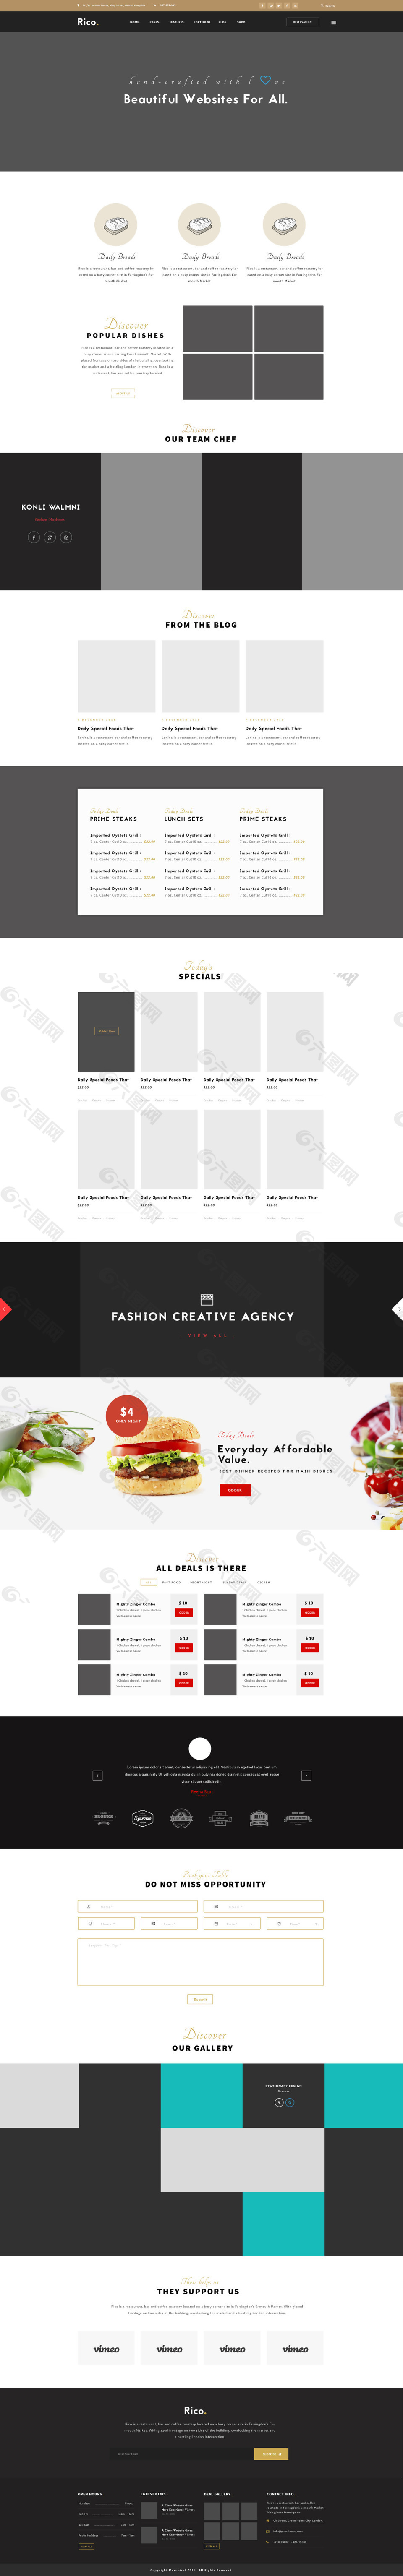 外卖餐厅在线食品订购网站psd模板